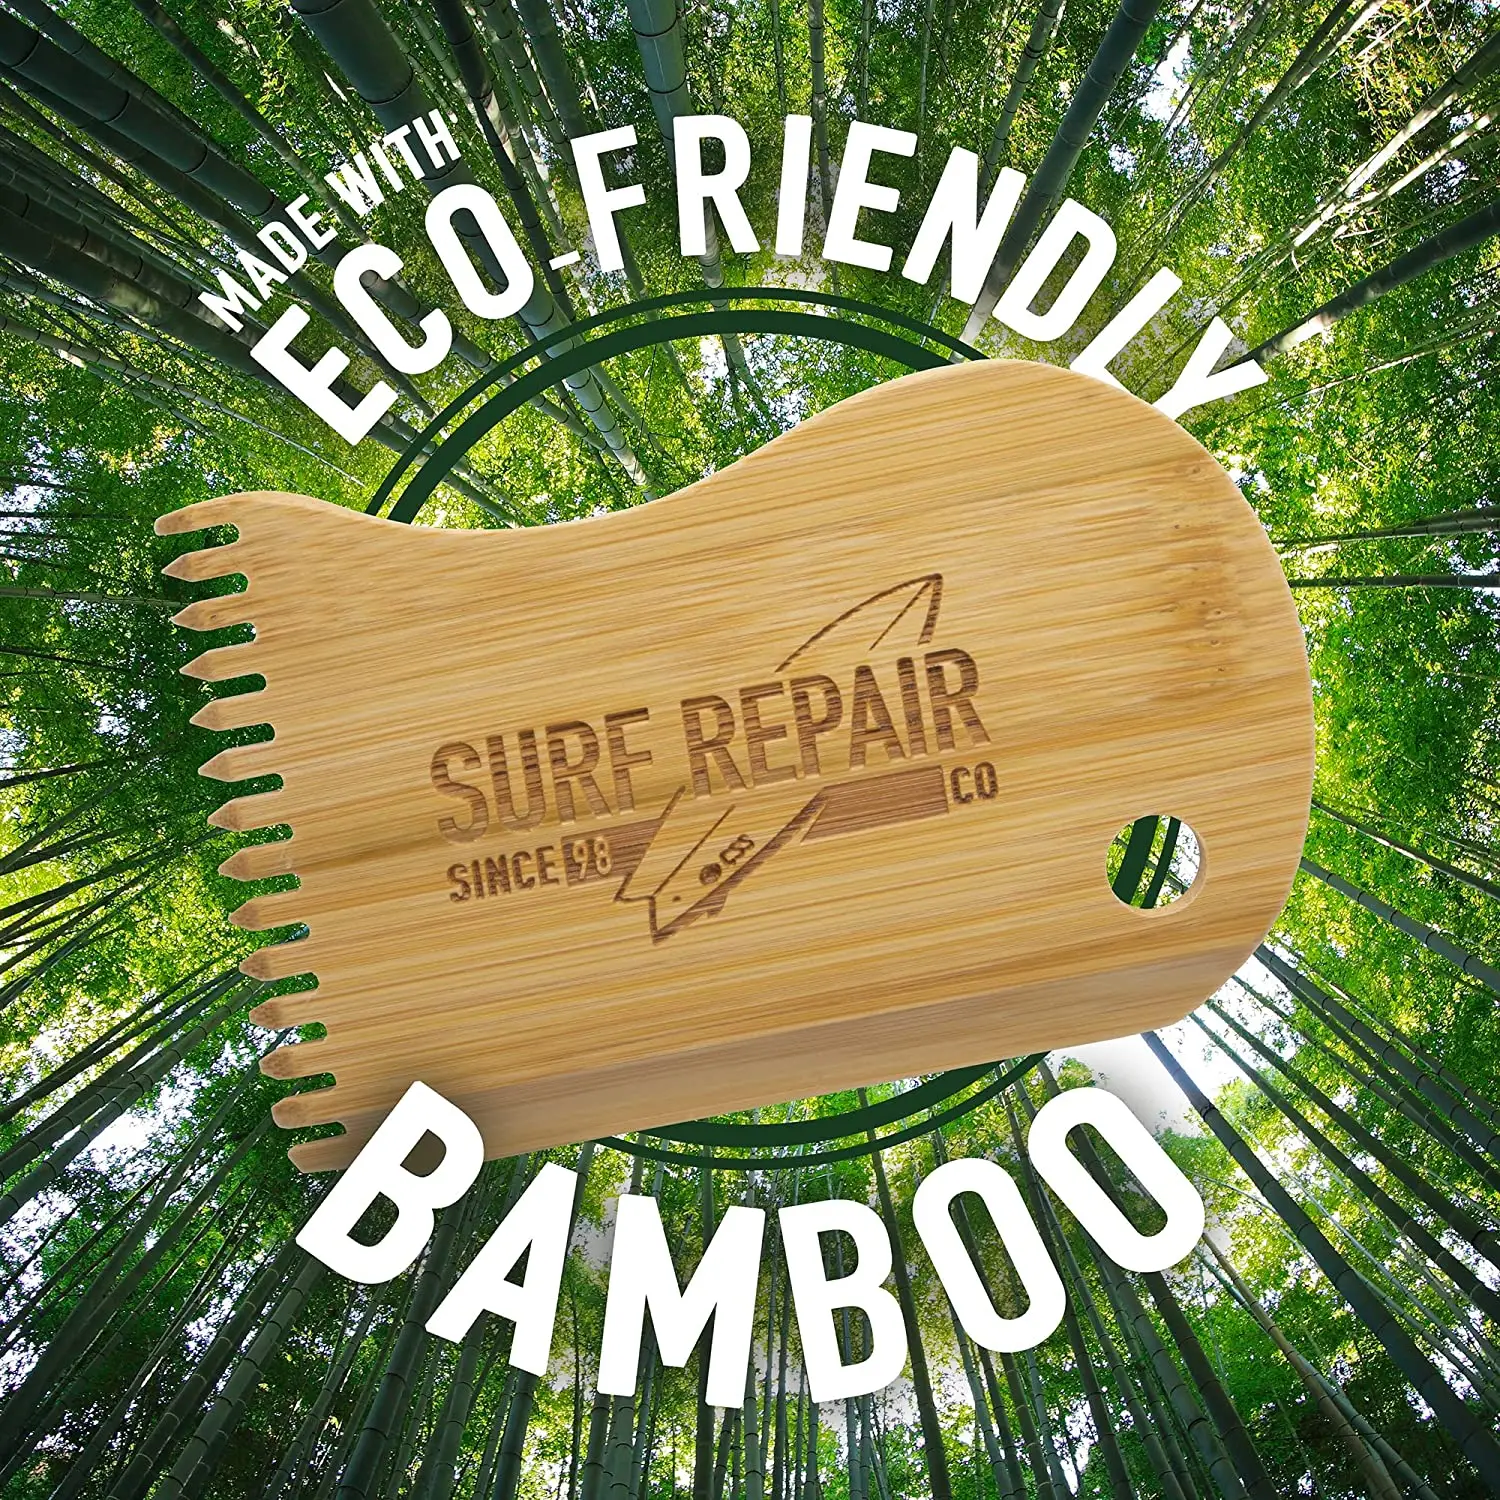 Accesorios para surfear, peine de cera con logotipo personalizado, raspador de cera de bambú y removedor de cera para Surf, regalo para surfista, venta al por mayor